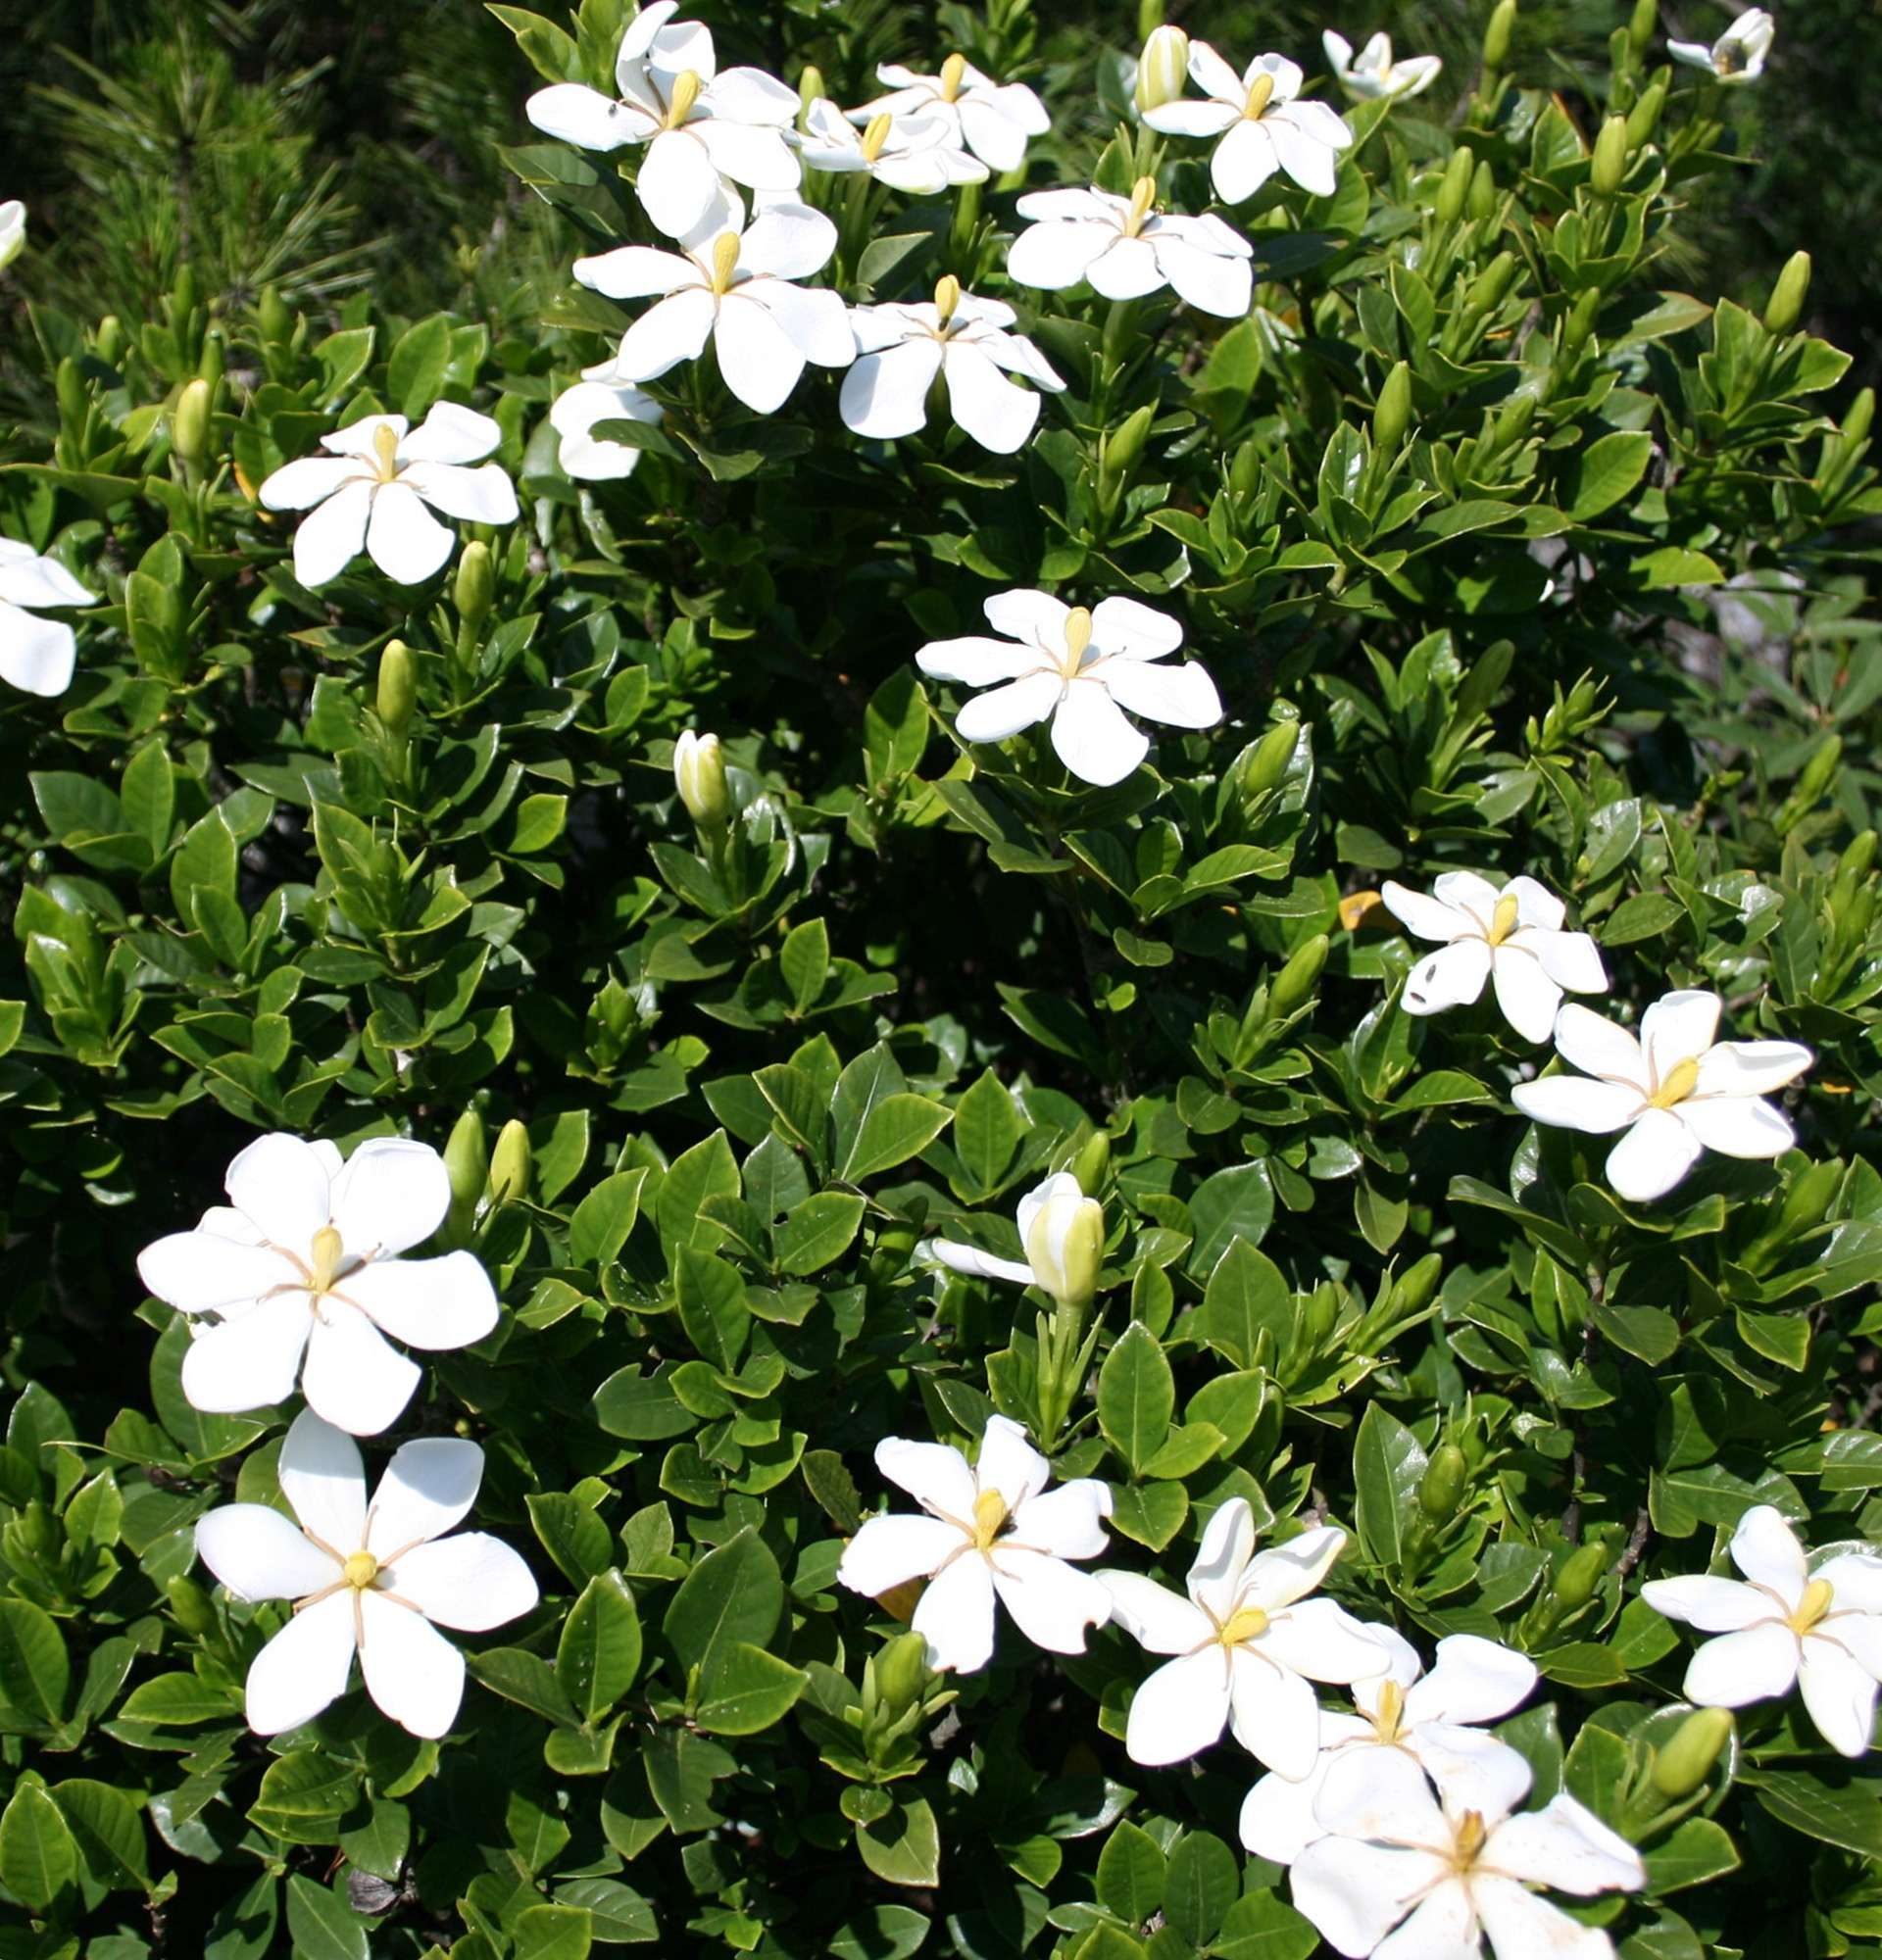 Gardenienfoto - Strauch mit weißen Blüten